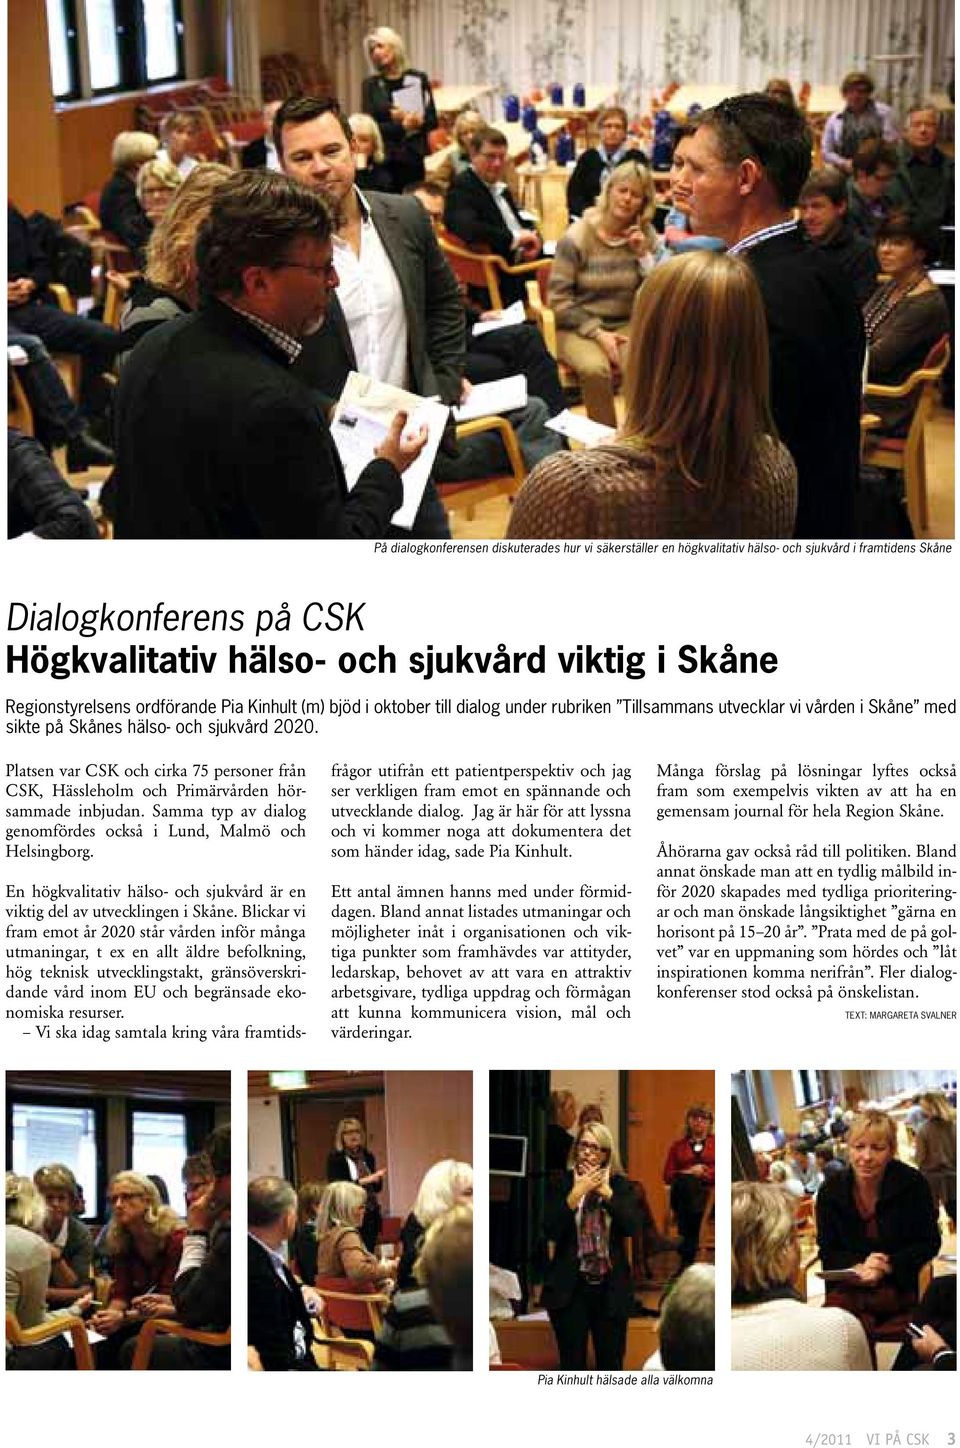 Platsen var CSK och cirka 75 personer från CSK, Hässleholm och Primärvården hörsammade inbjudan. Samma typ av dialog genomfördes också i Lund, Malmö och Helsingborg.